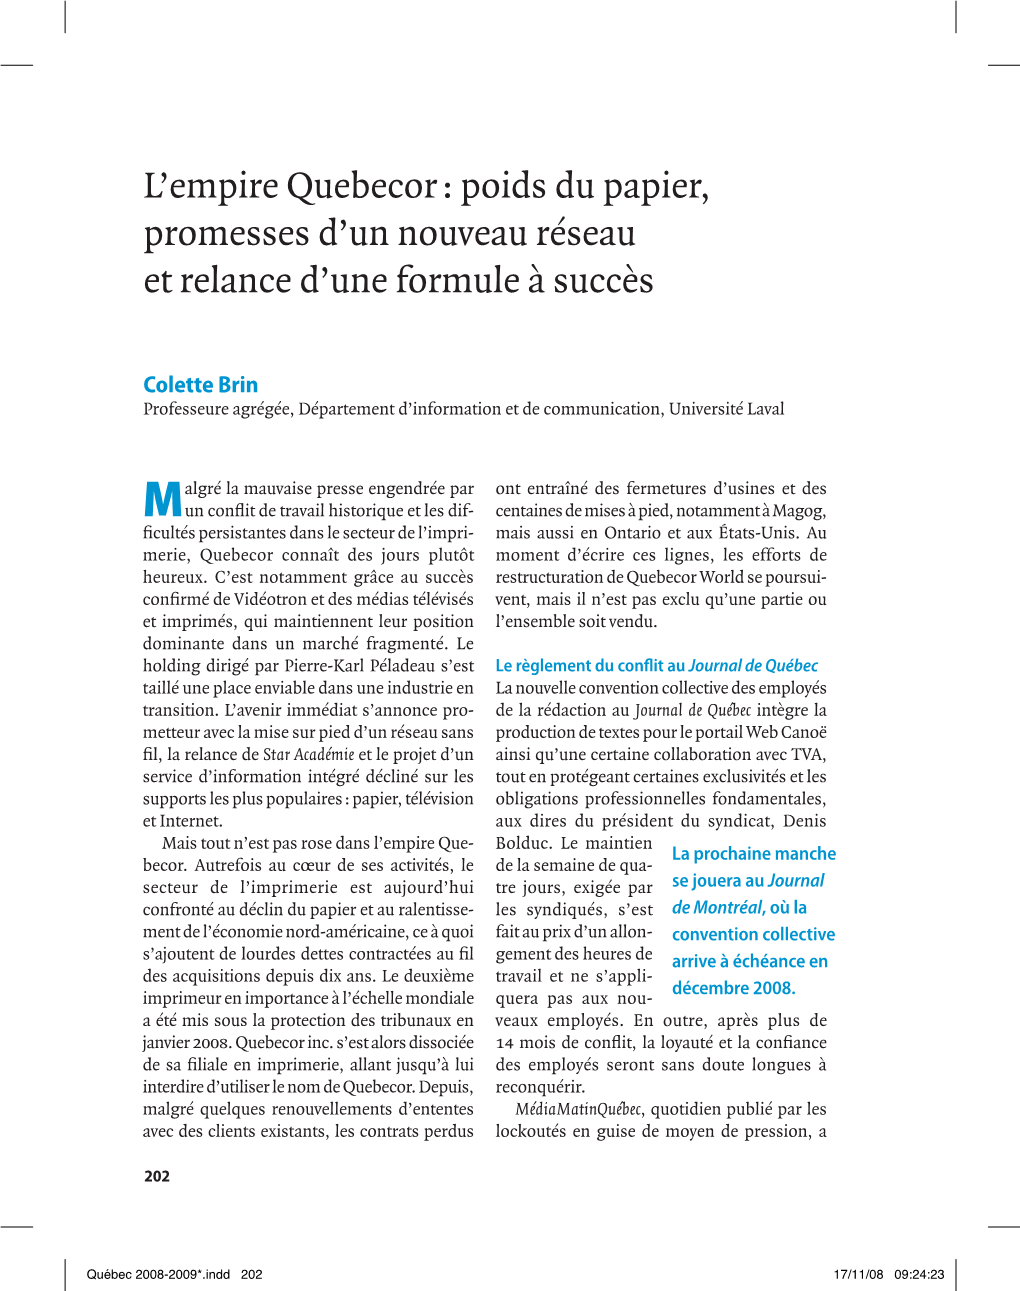 L'empire Quebecor : Poids Du Papier, Promesses D'un Nouveau Réseau Et